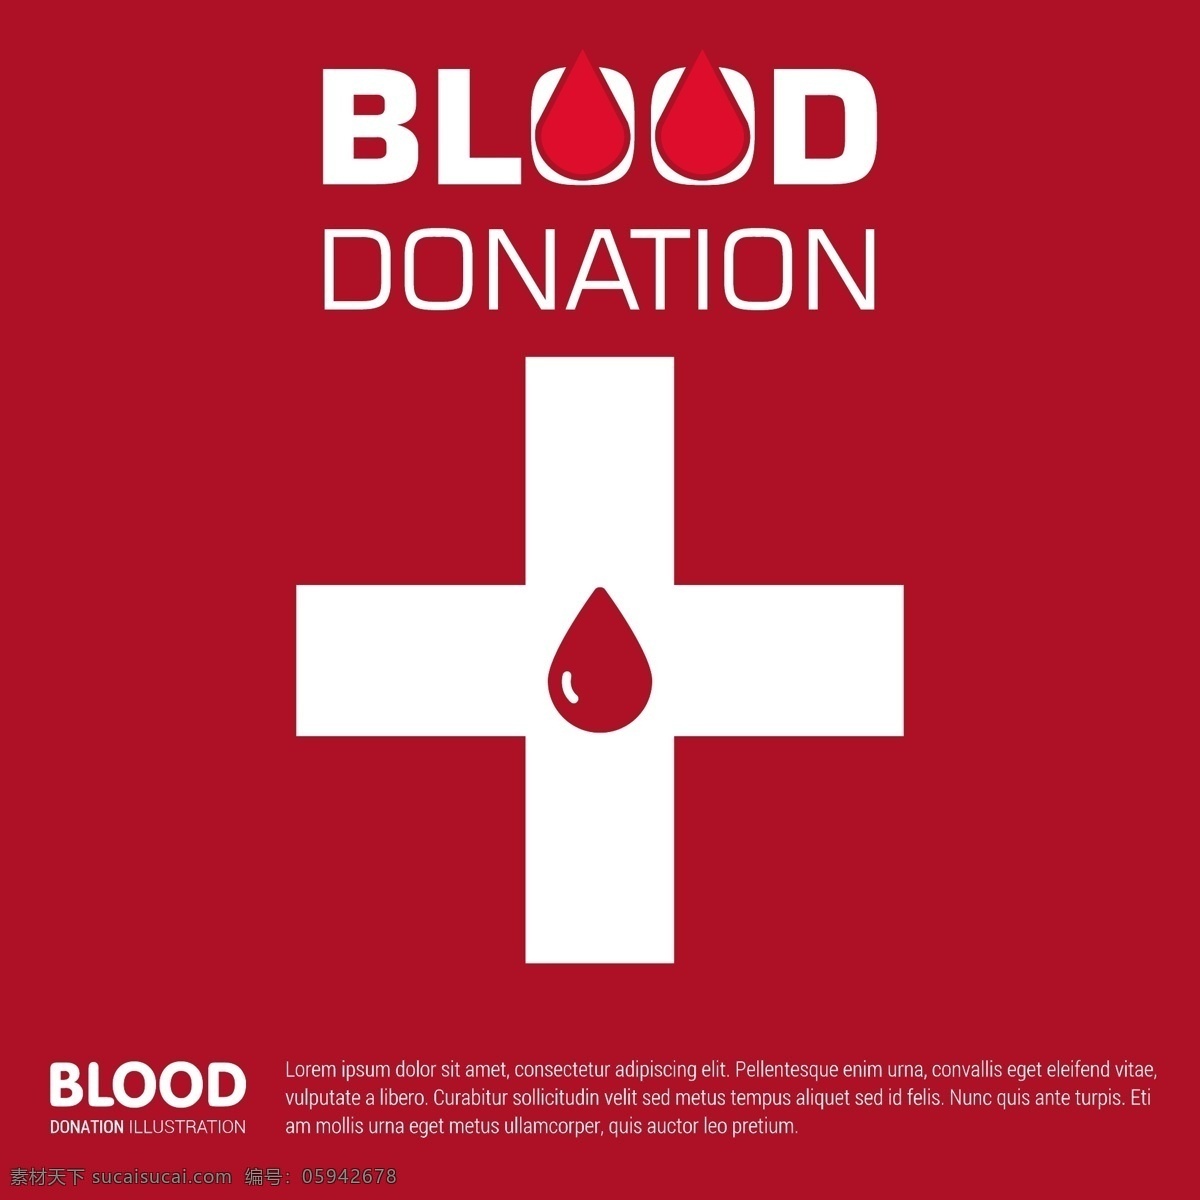 献血红背景 心脏 医疗 世界 健康 医院 血液 药品 下降 帮助 实验室 生活 慈善 急救 保存 国际 捐赠